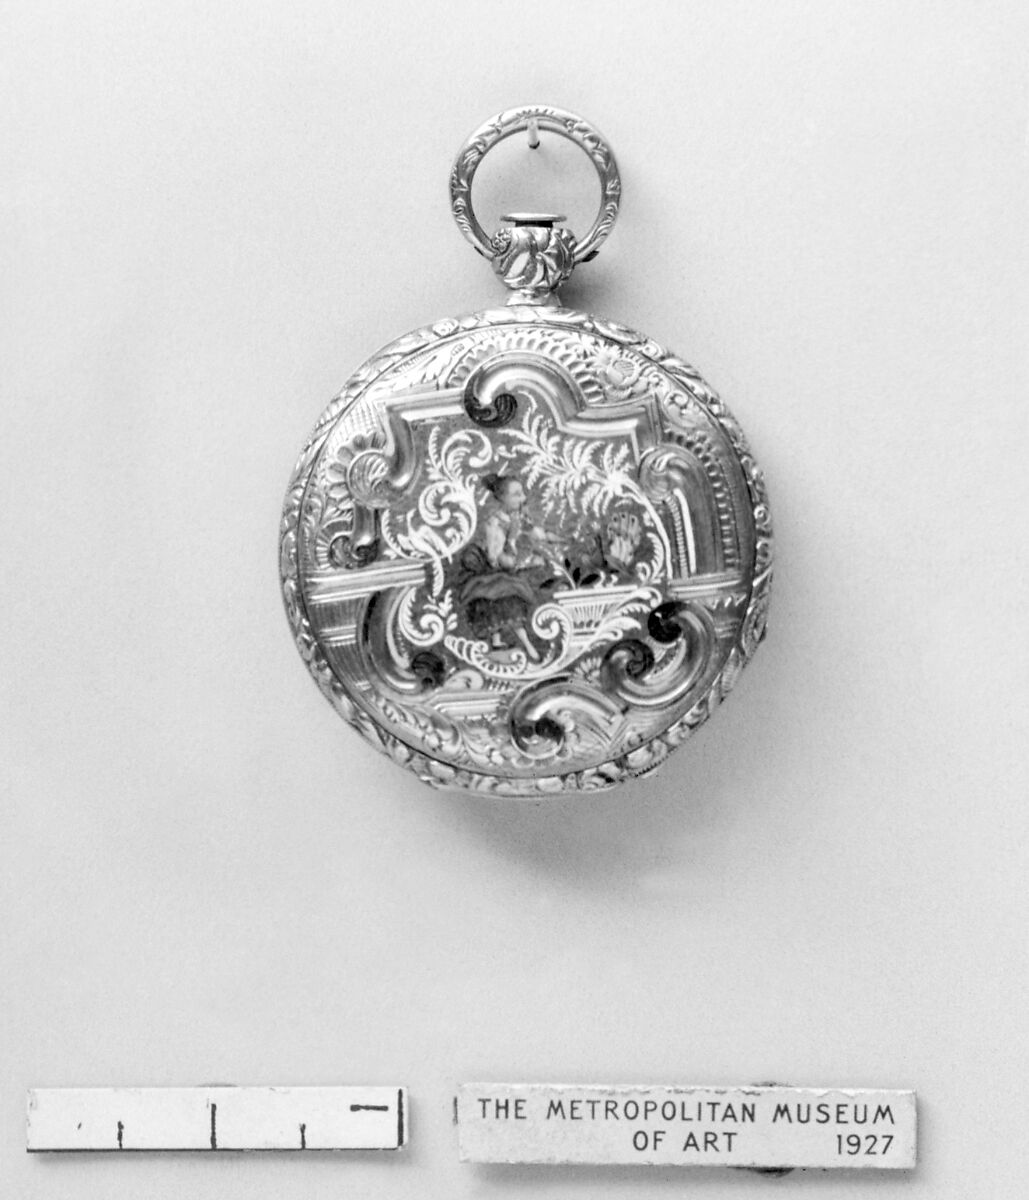 Watch, Watchmaker: Firm of Alliez, Bachelard et Terond Fils (ca. 1829), Gold, enamel, steel, Swiss, Geneva 